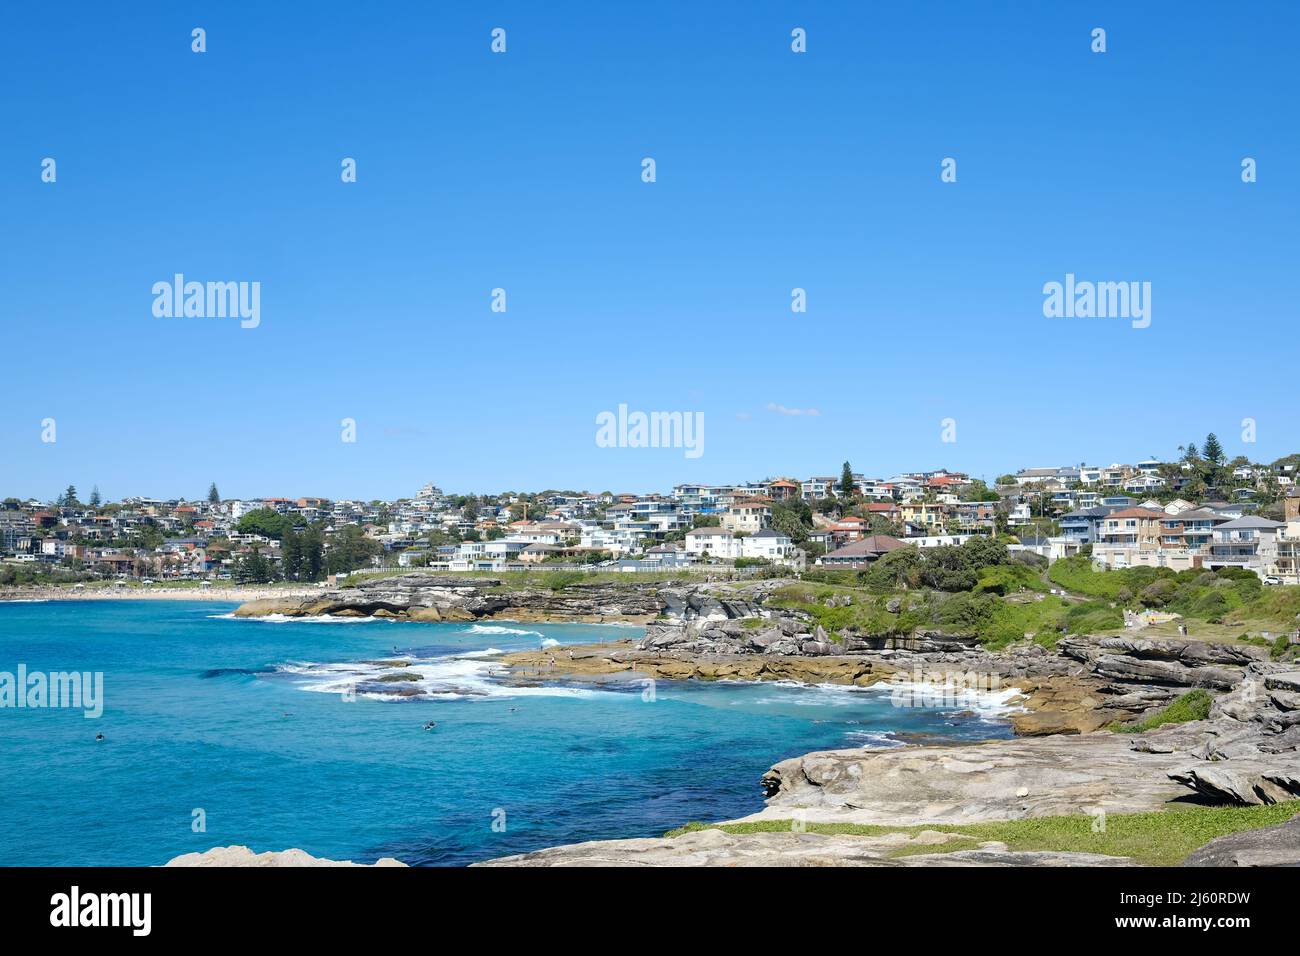 Vue sur la côte est de Sydney, près de Tamarama Beach - Nouvelle-Galles du Sud, Australie Banque D'Images